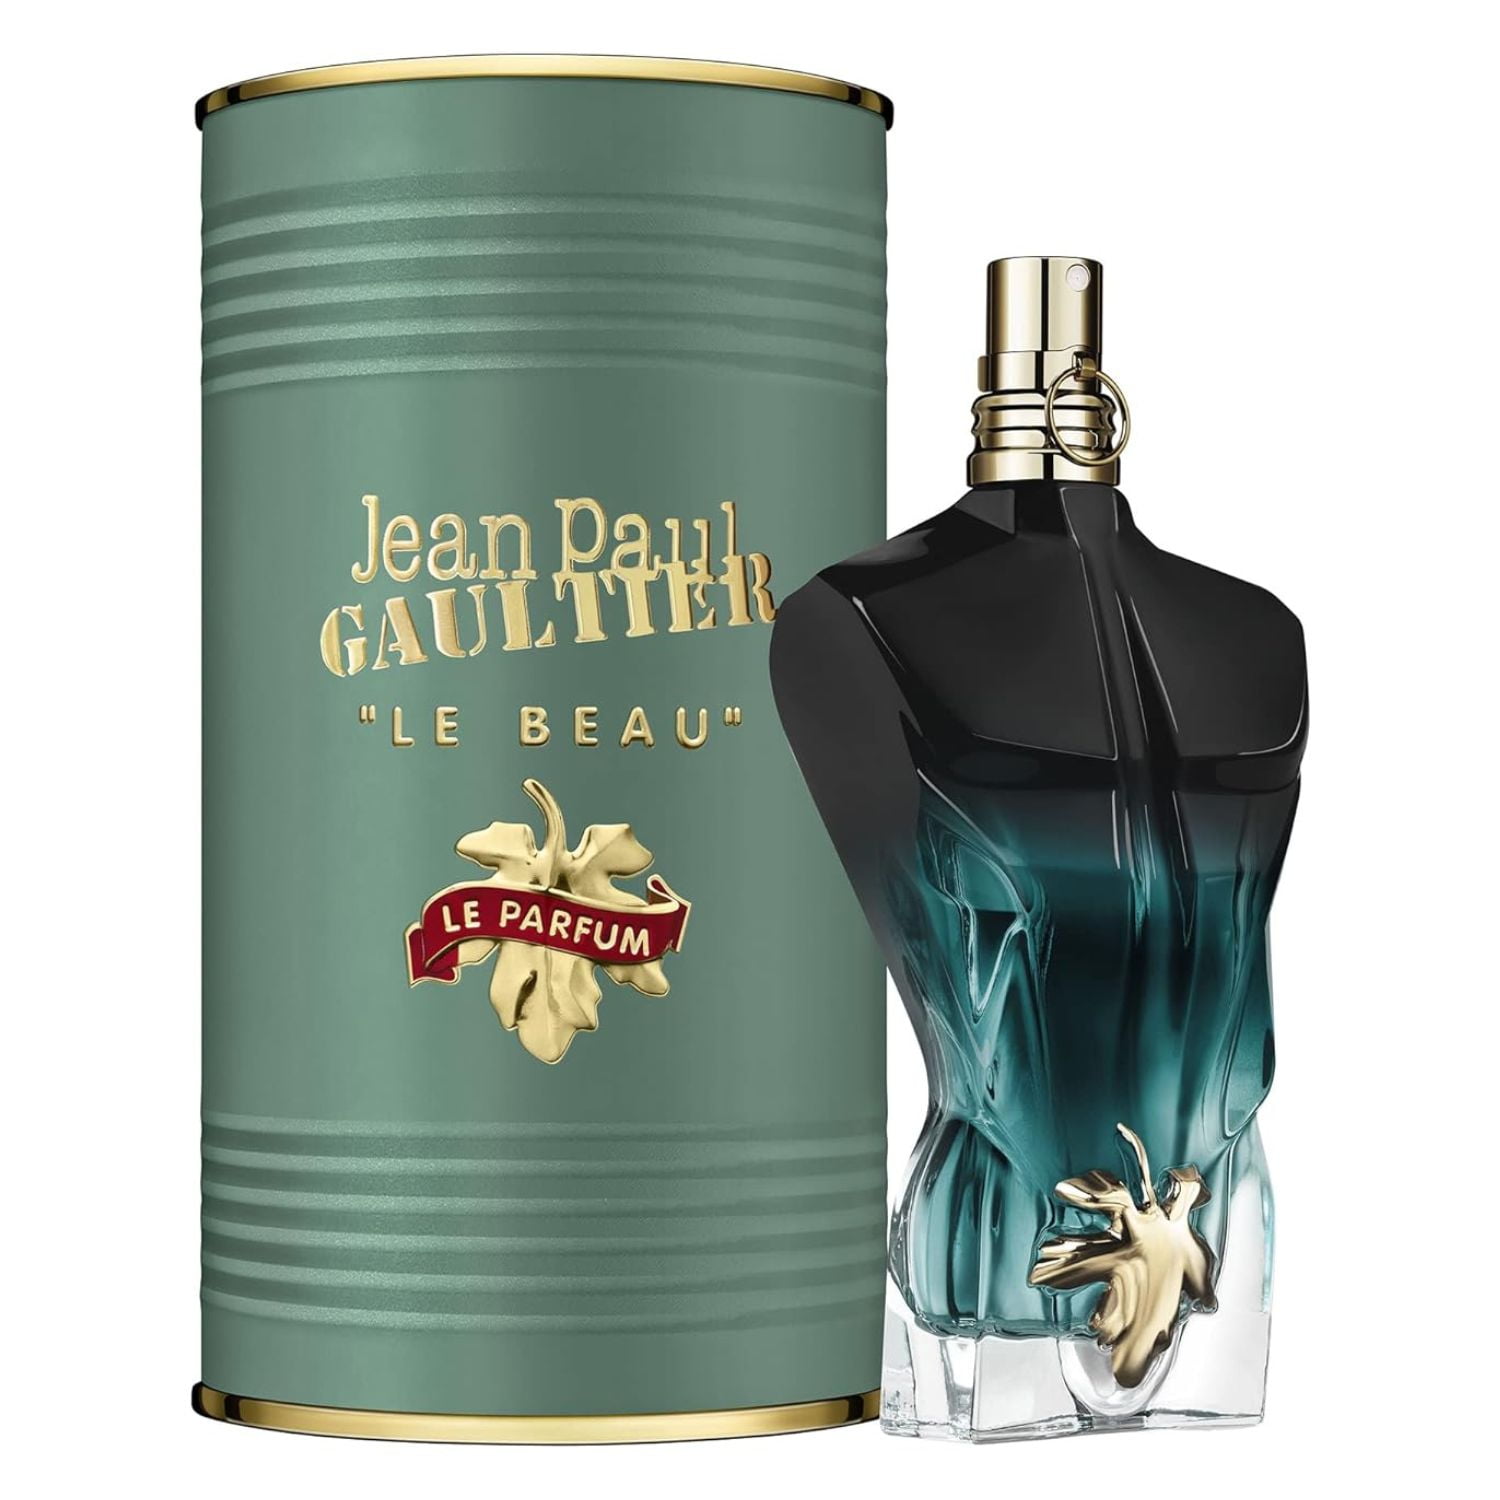 Eau oz 4.2 Beau Men, Le Spray For Parfum Jean De Gaultier Intense Paul